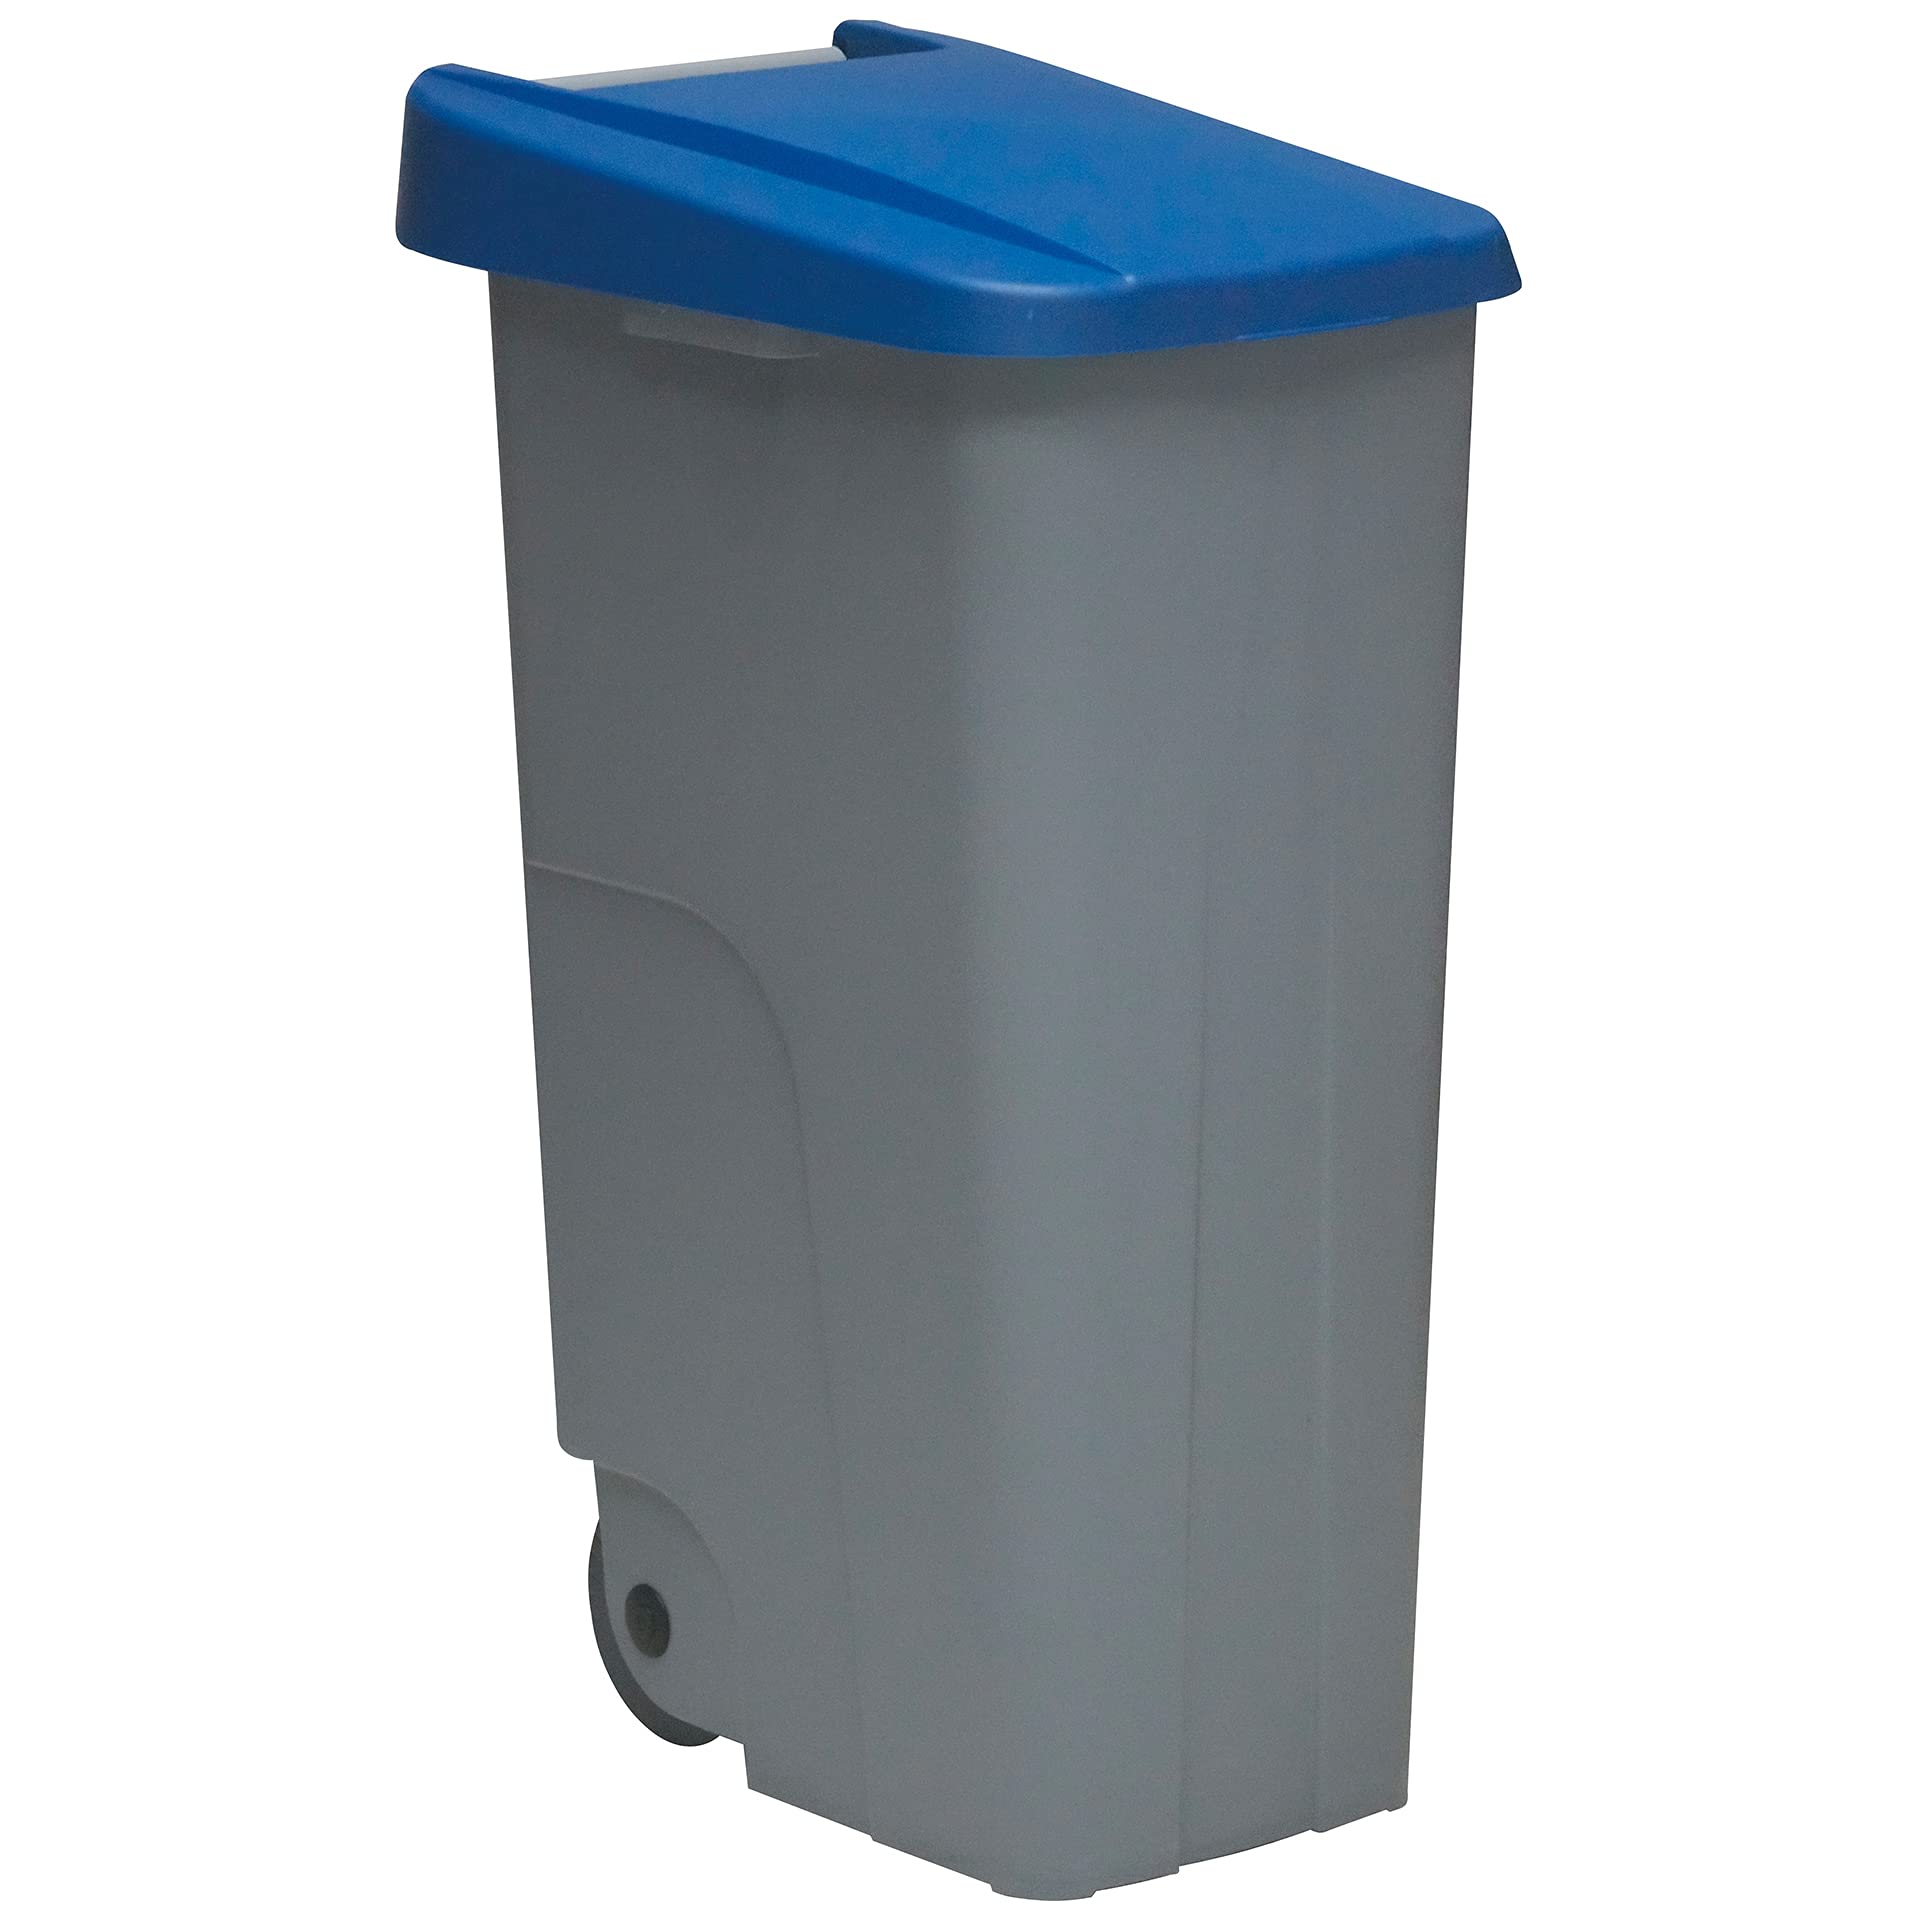 Denox Abfalleimer, Recycling, Kunststoff, 110 l, Grau/Blau